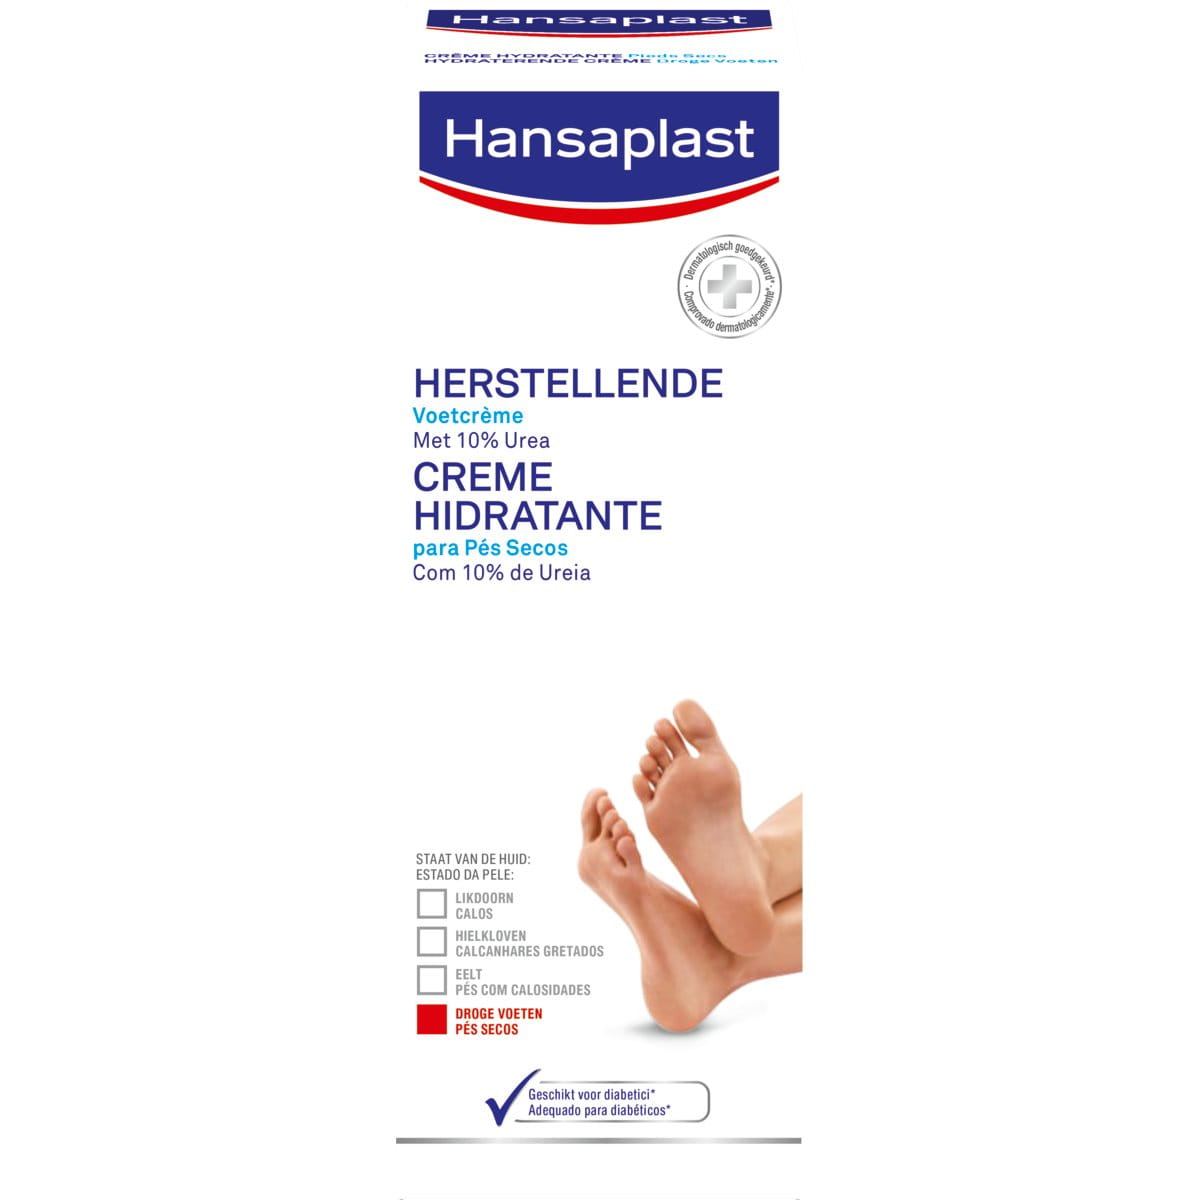 Herstellende voetcrème - Hansaplast